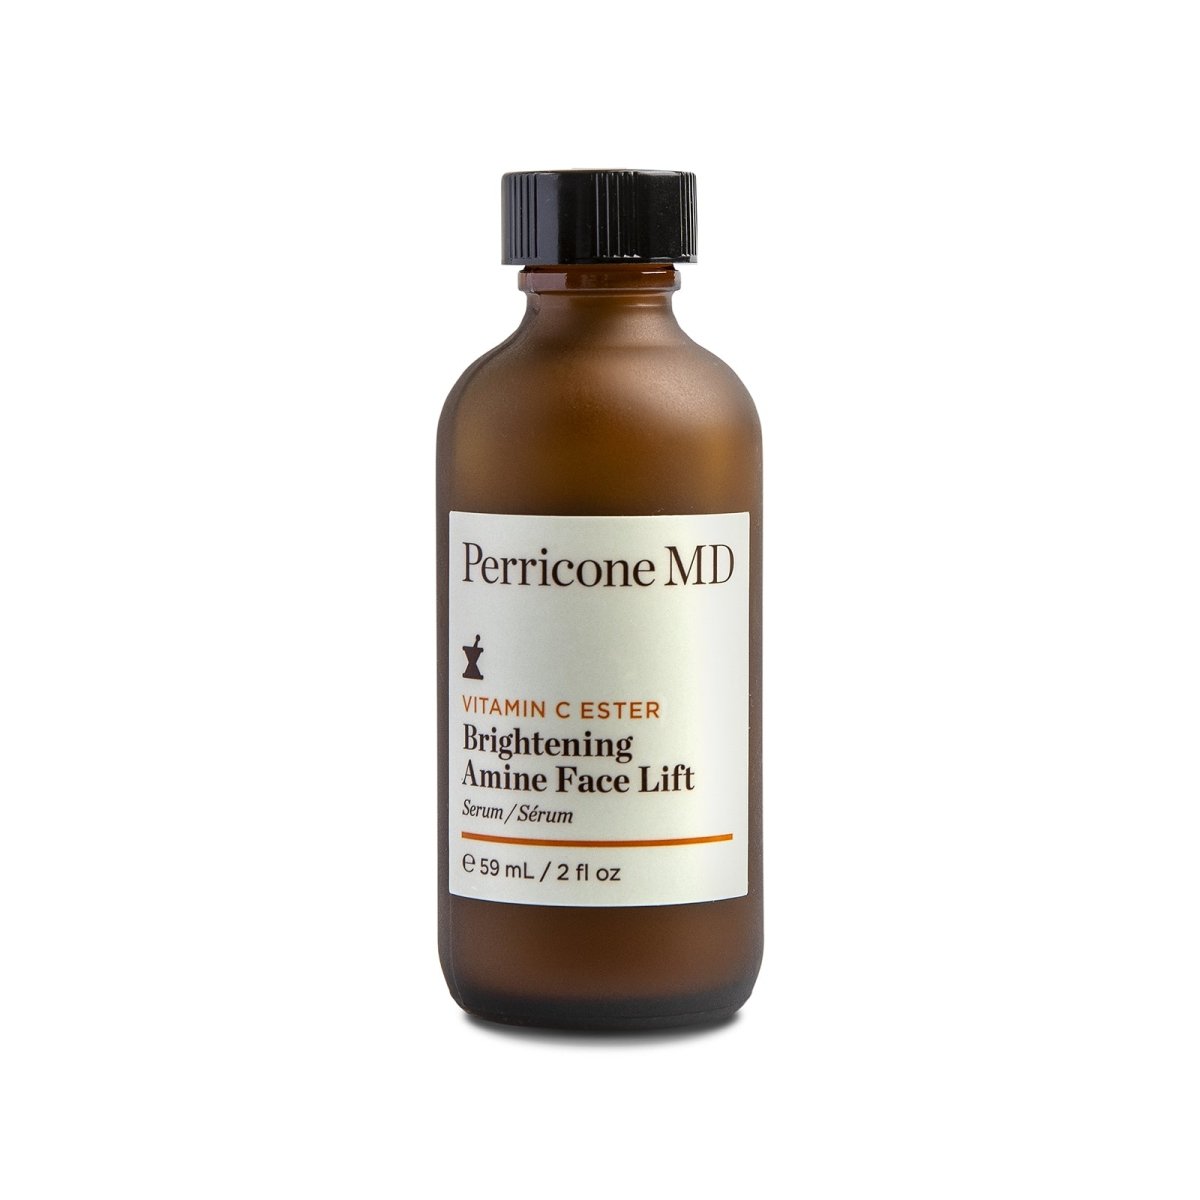 Perricone MD Vitamin C Ester Brightening Amine Face Lift - SkincareEssentials